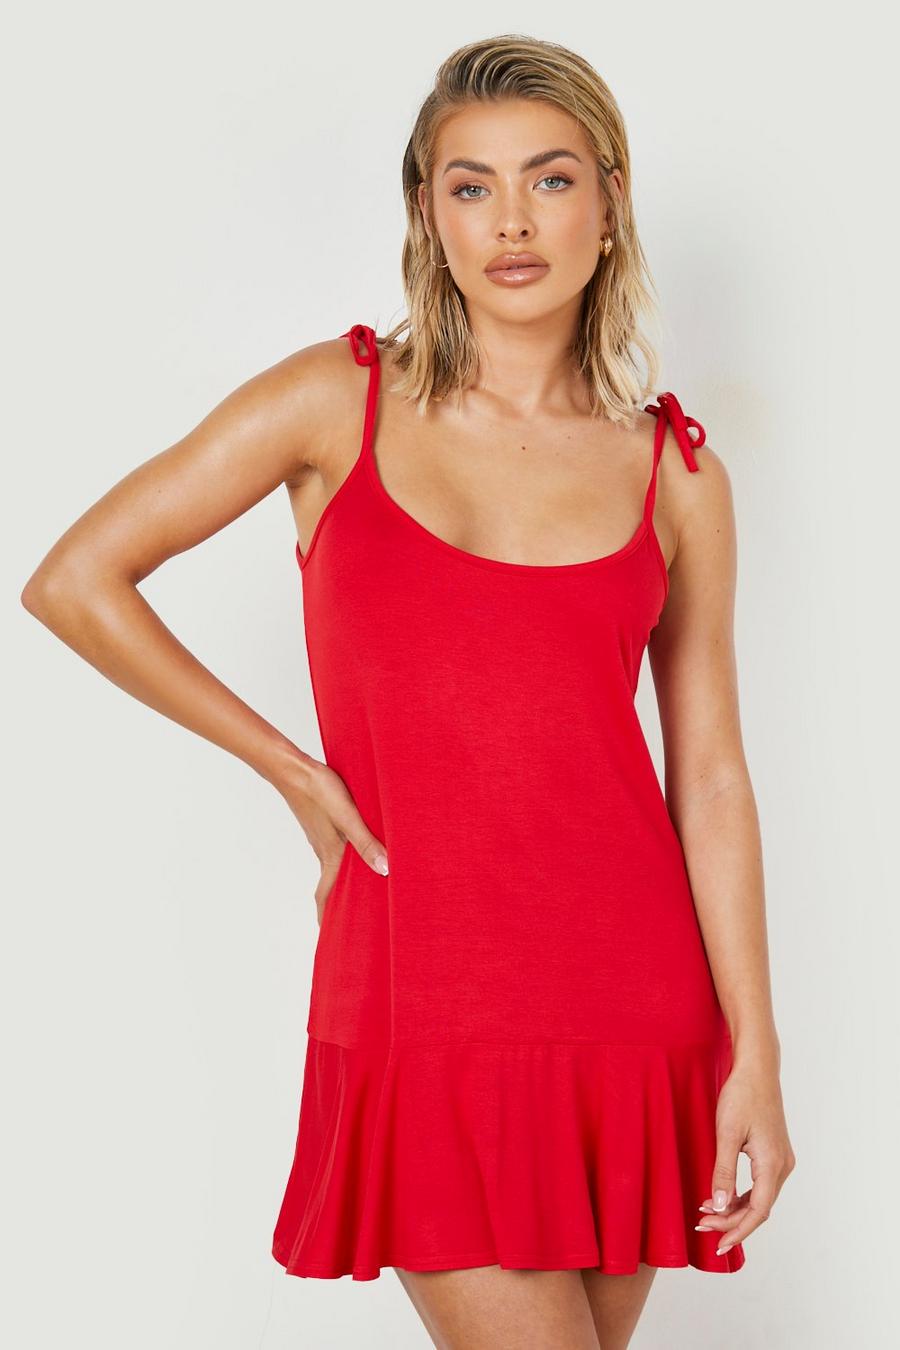 אדום rosso שמלת חוף סווינג מבד ג'רסי עם כתפיות דקות